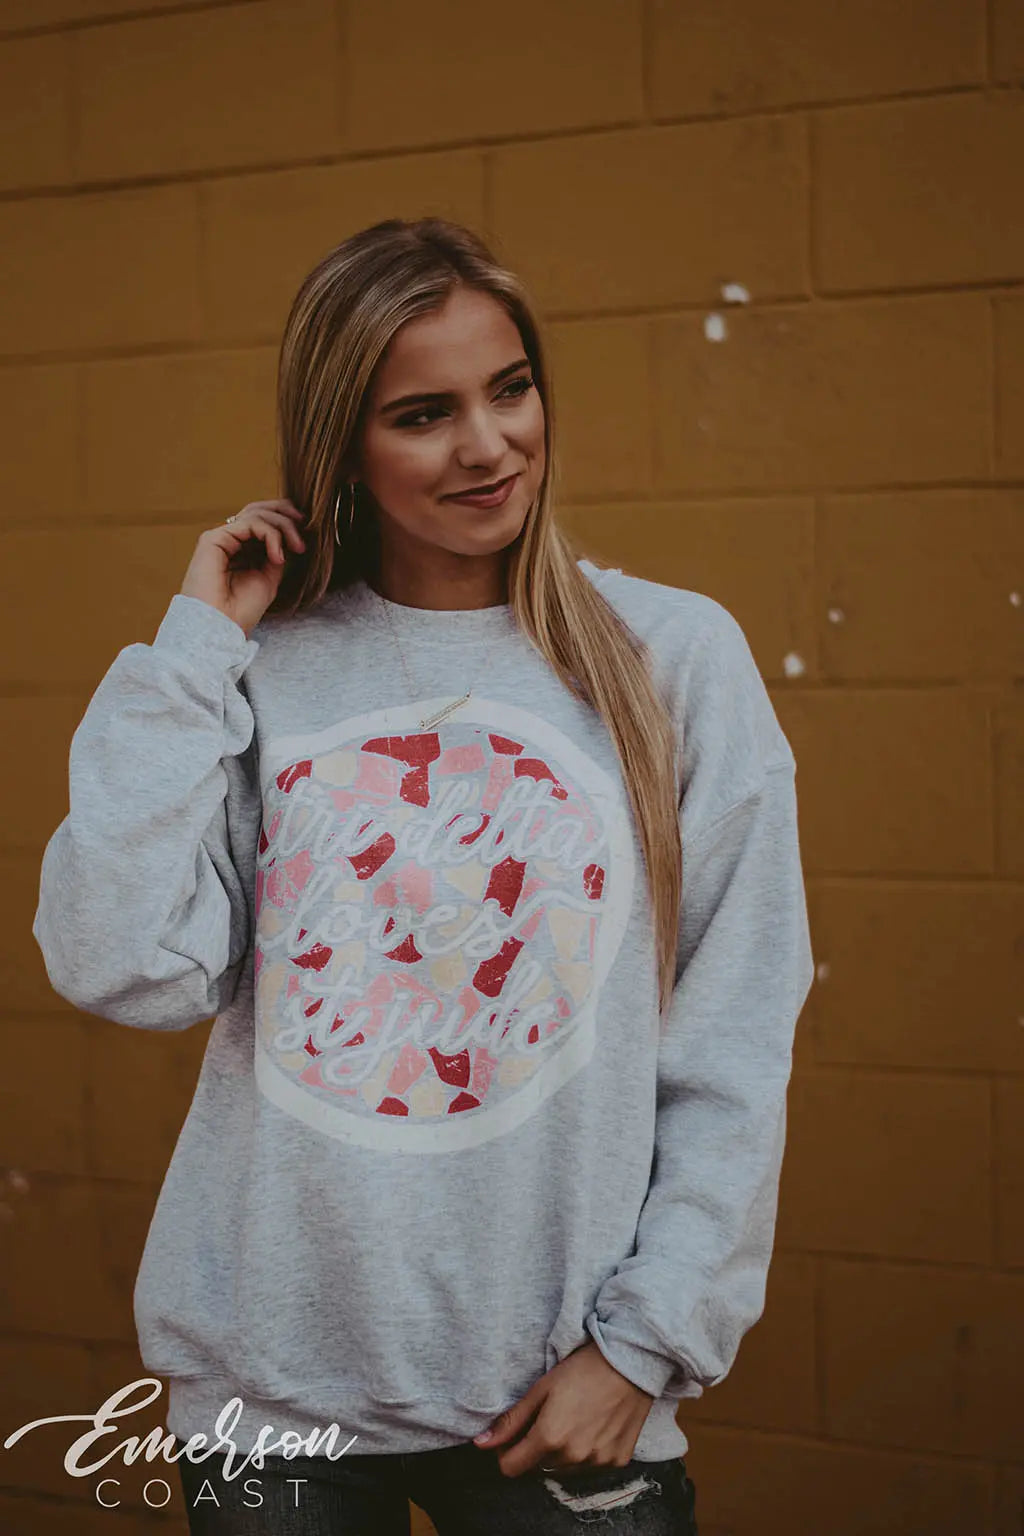 Tri Delt Loves St. Jude Philanthropy Sweatshirt